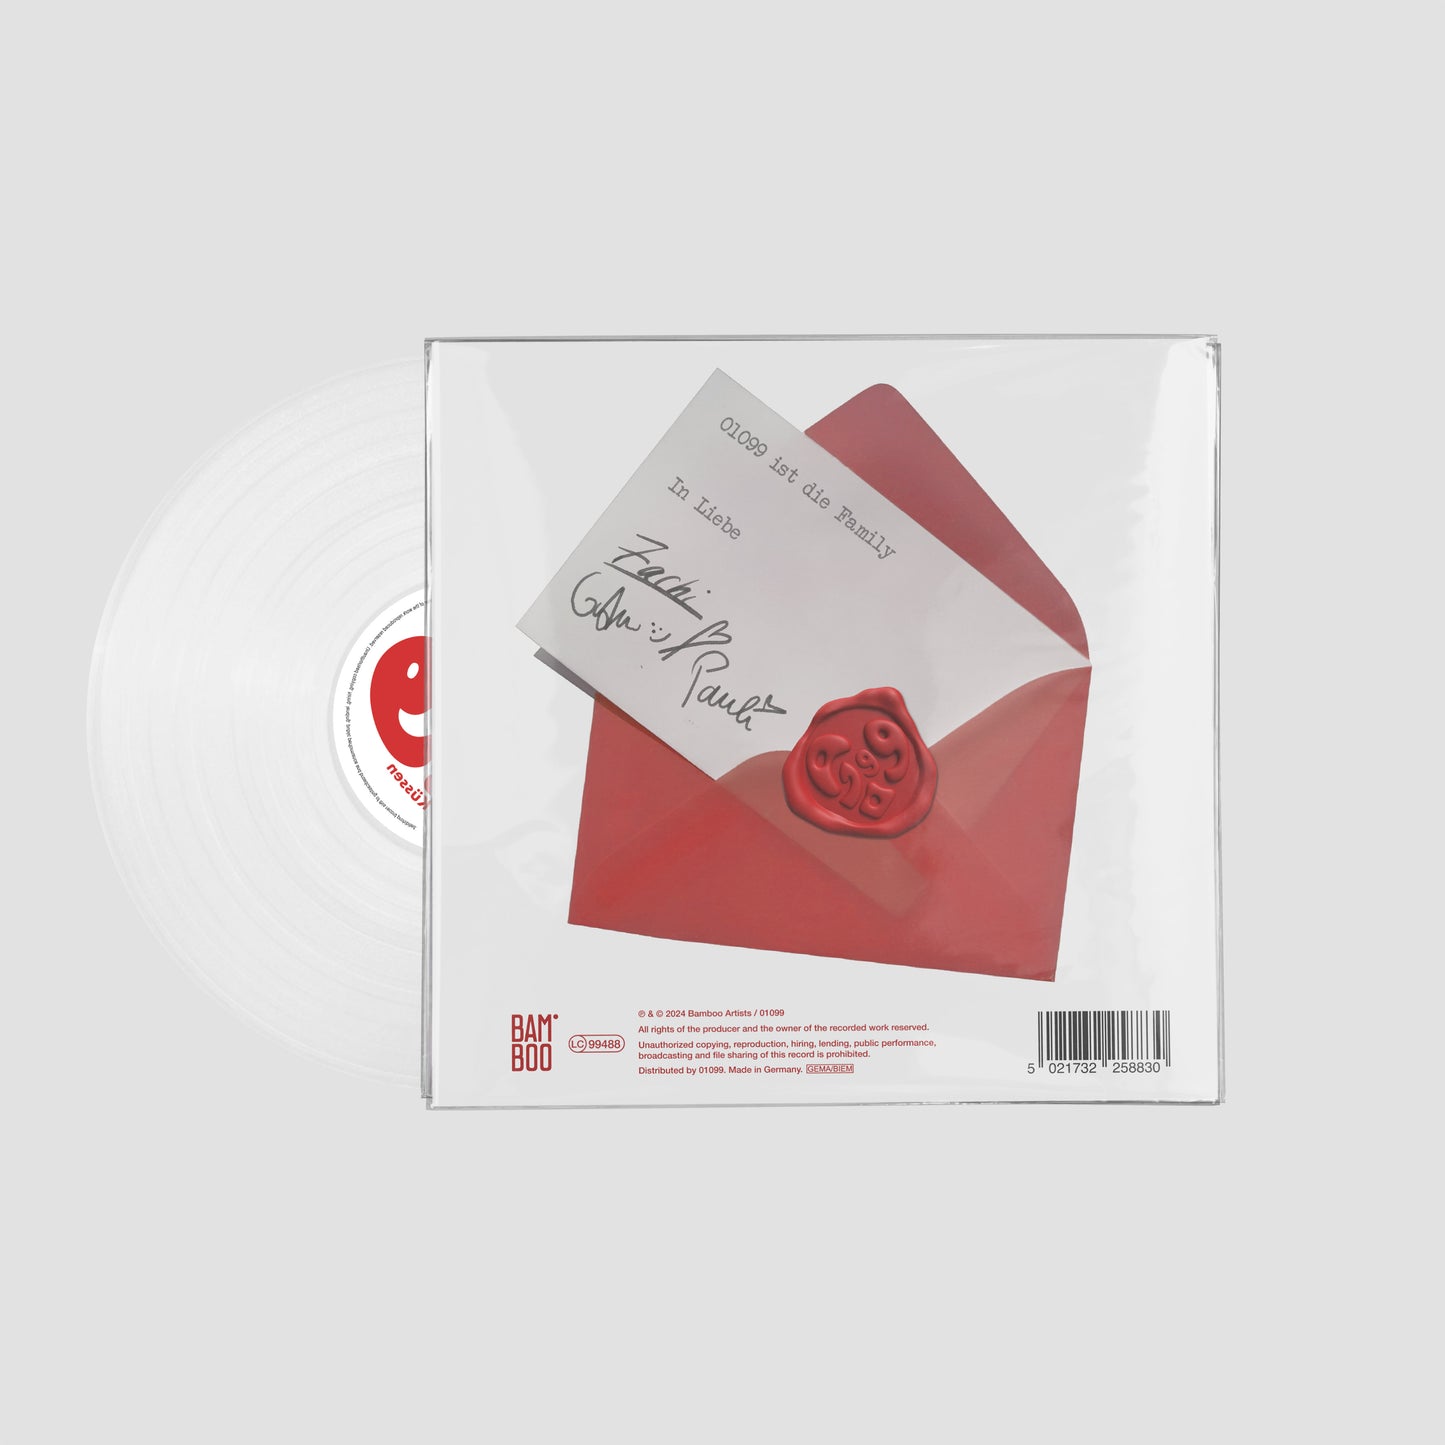 01099 - Küssen weiß transparent - Colored Vinyl